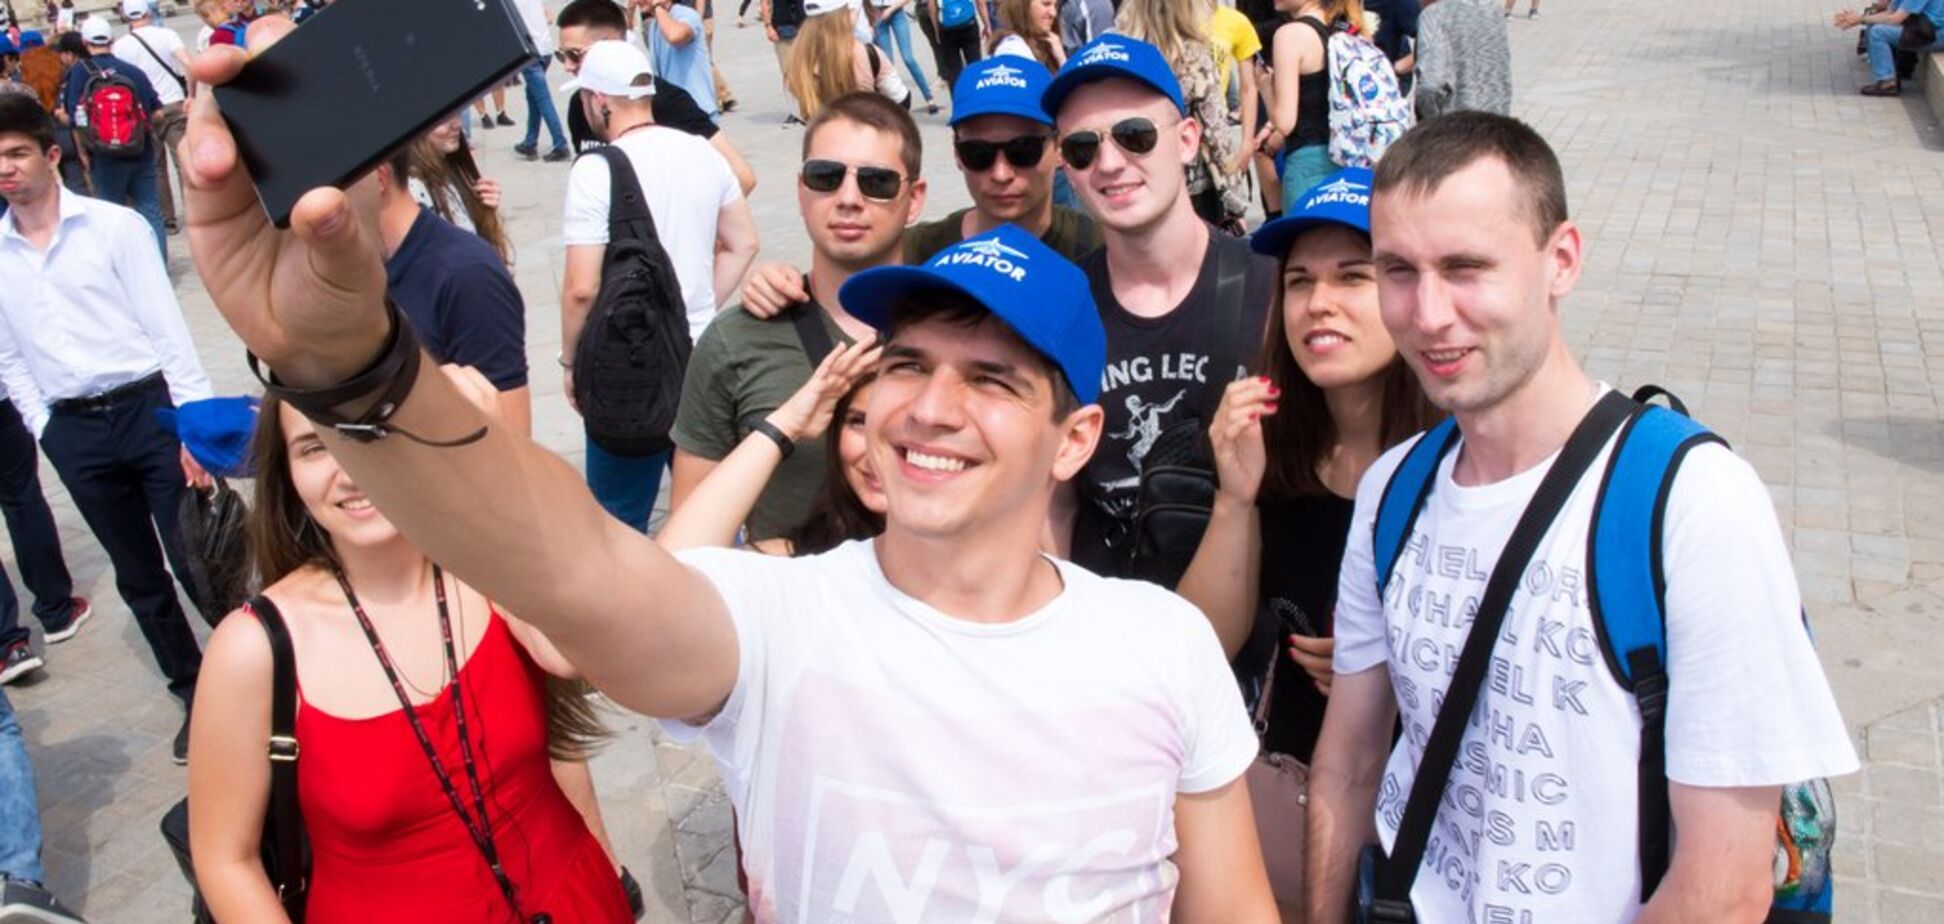 Выиграть престижный конкурс и отправиться во Францию: как сотне украинских студентов это удалось